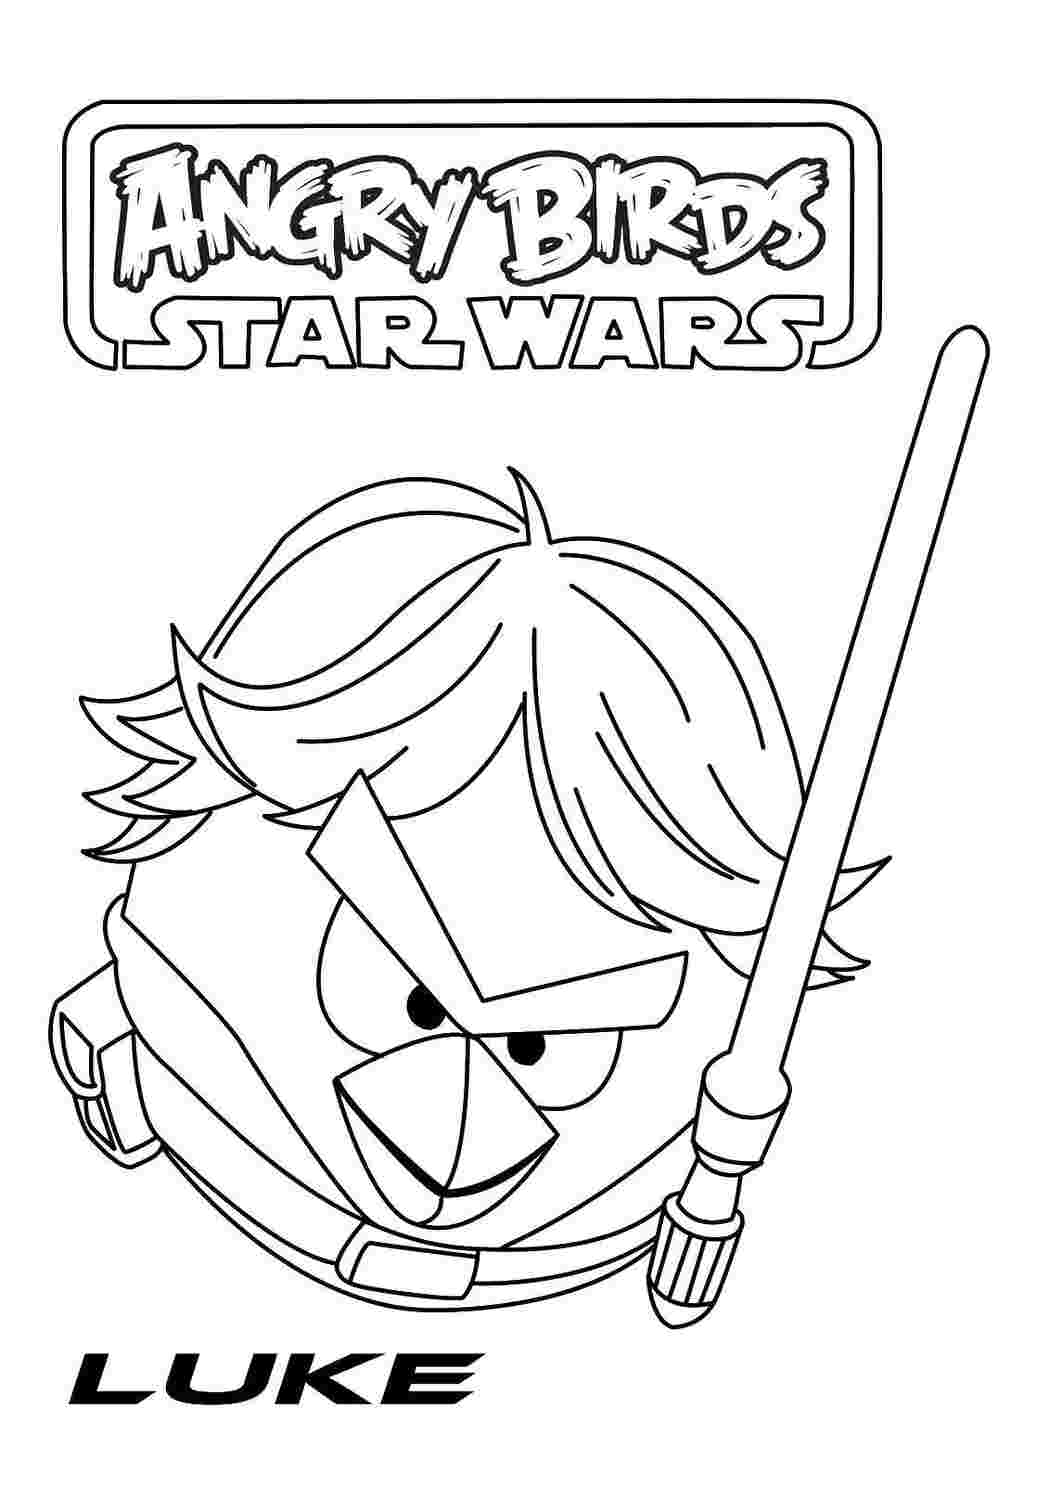 Раскраска Angry Birds Звездные войны